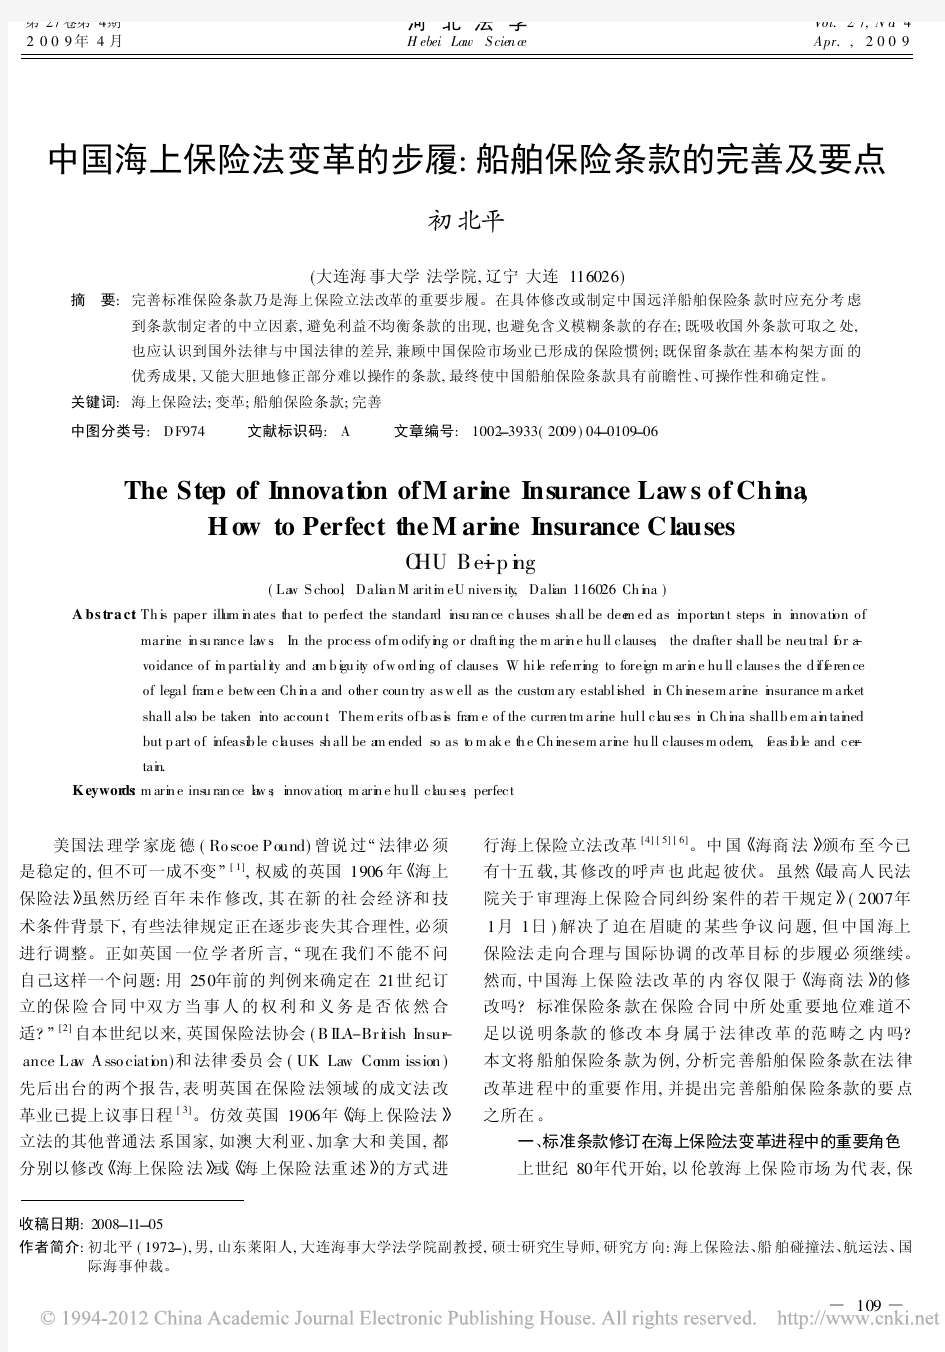 中国海上保险法变革的步履_船舶保险条款的完善及要点